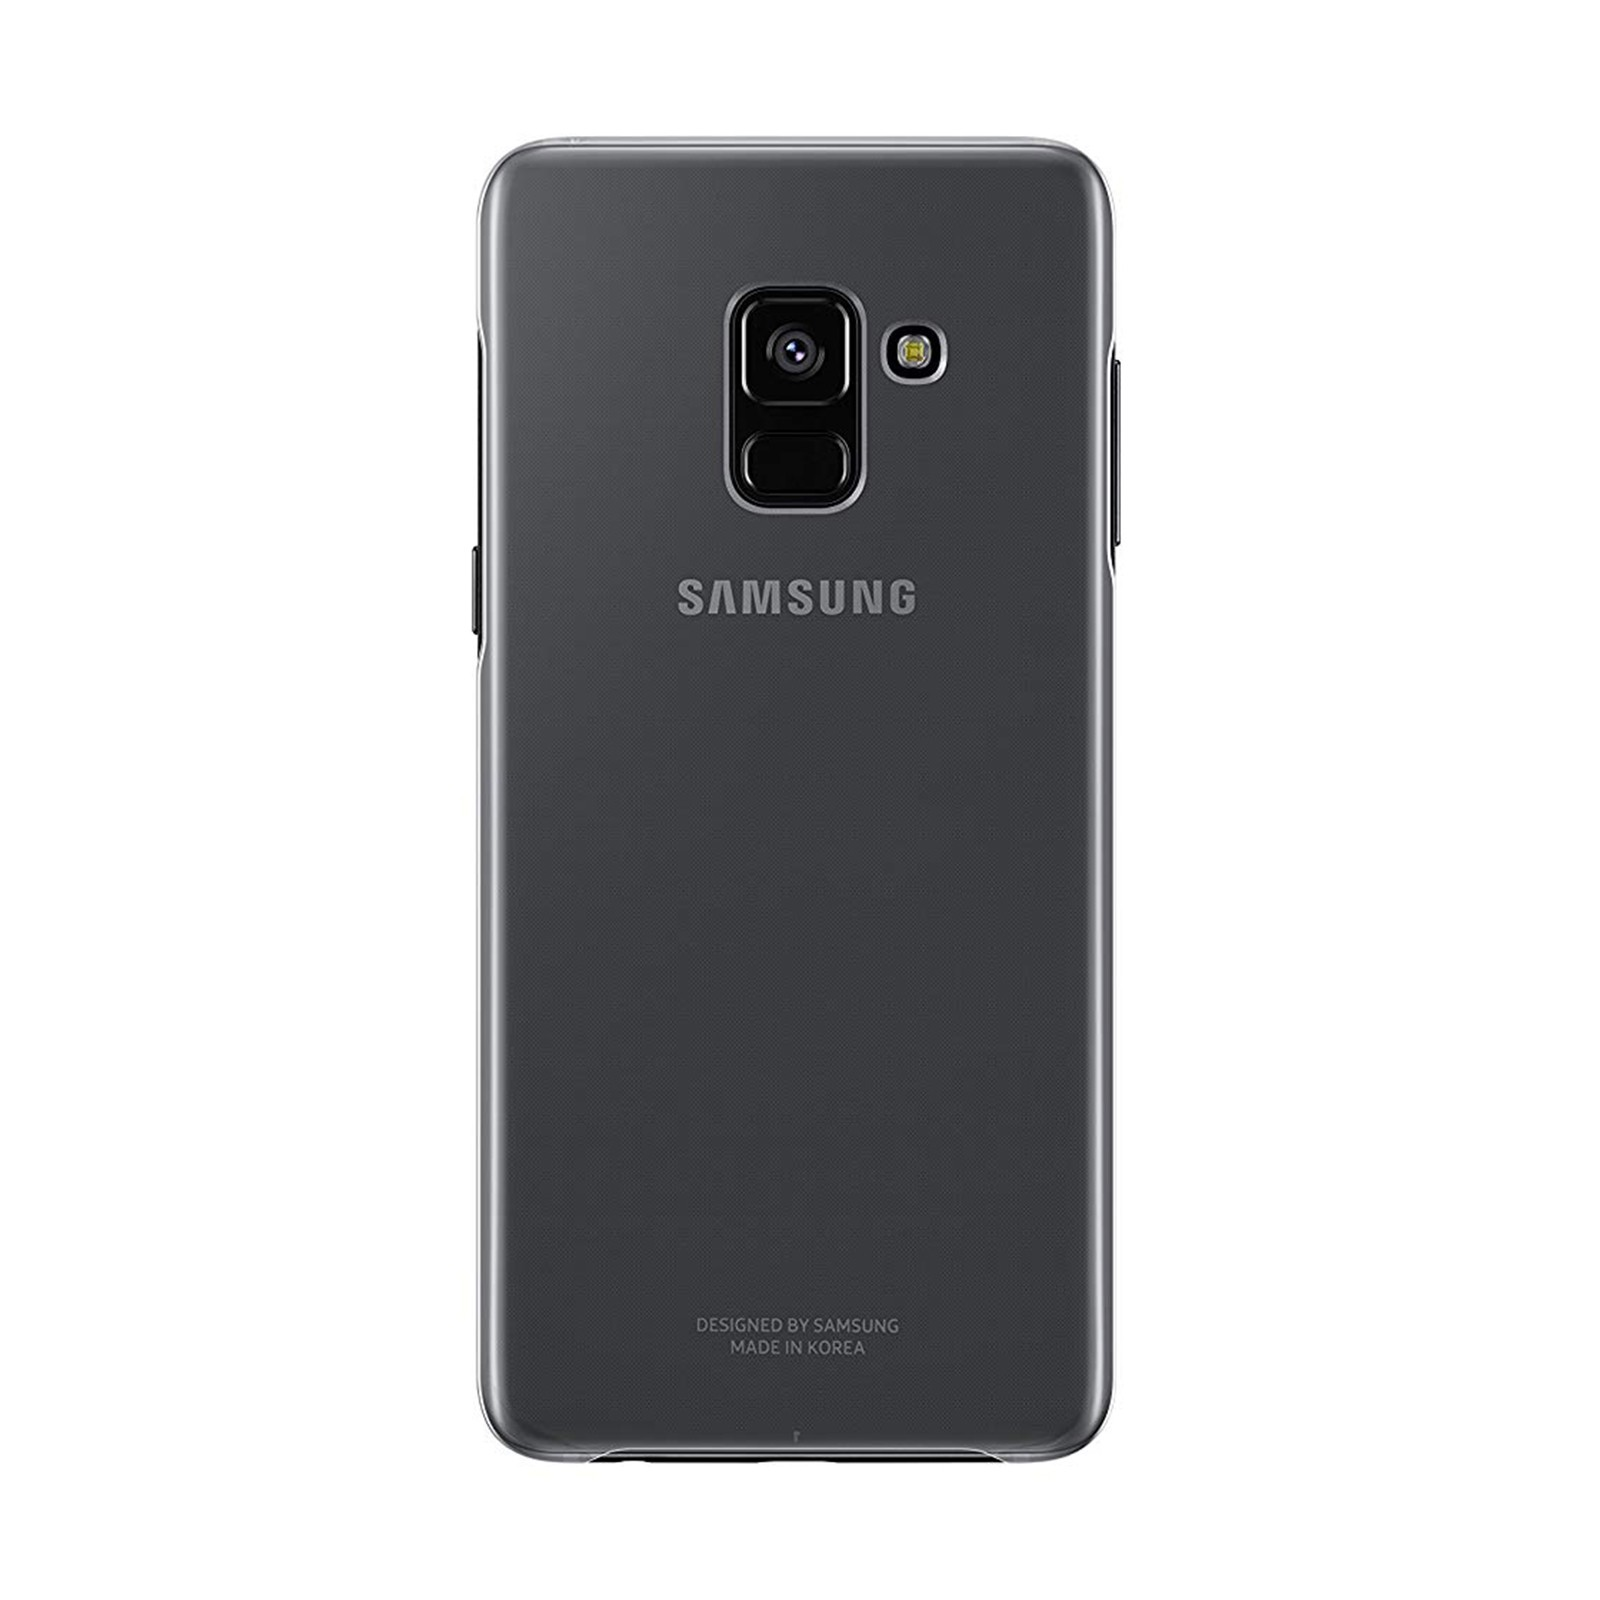 SAMSUNG GAL. Galaxy Backcover, EF-QA530 A8, COVER Samsung, A8 TRANSPARENT, Transparent CLEAR